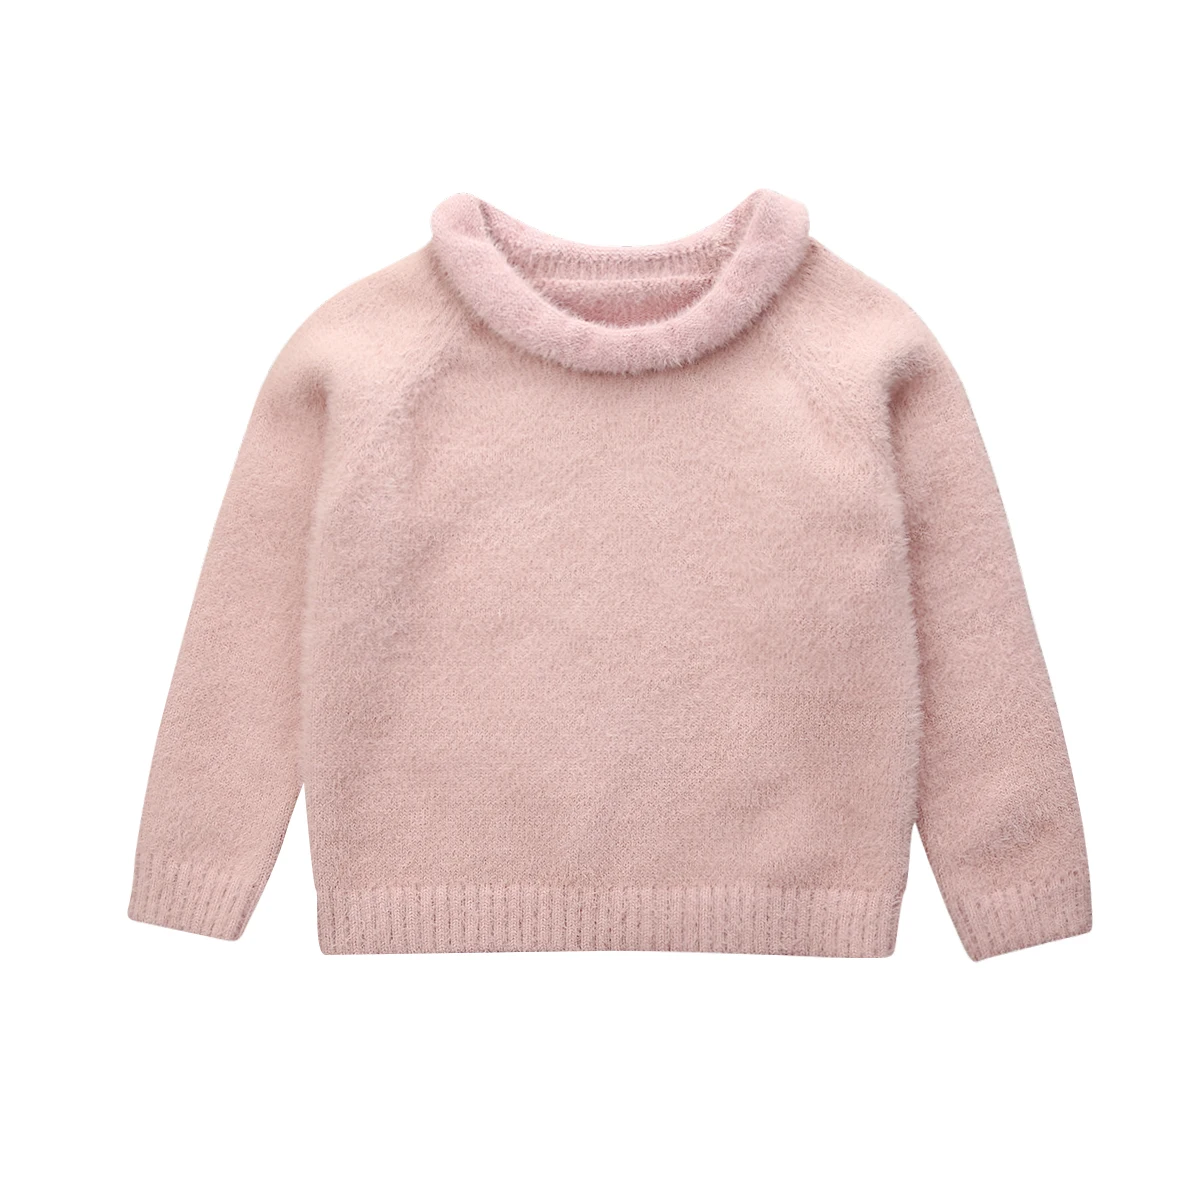 Осенне-зимние теплые детские свитера для маленьких девочек и мальчиков вязаный пуловер для малышей Топы, джемперы, однотонные свитера с мехом норки для девочек, От 0 до 3 лет - Цвет: Розовый